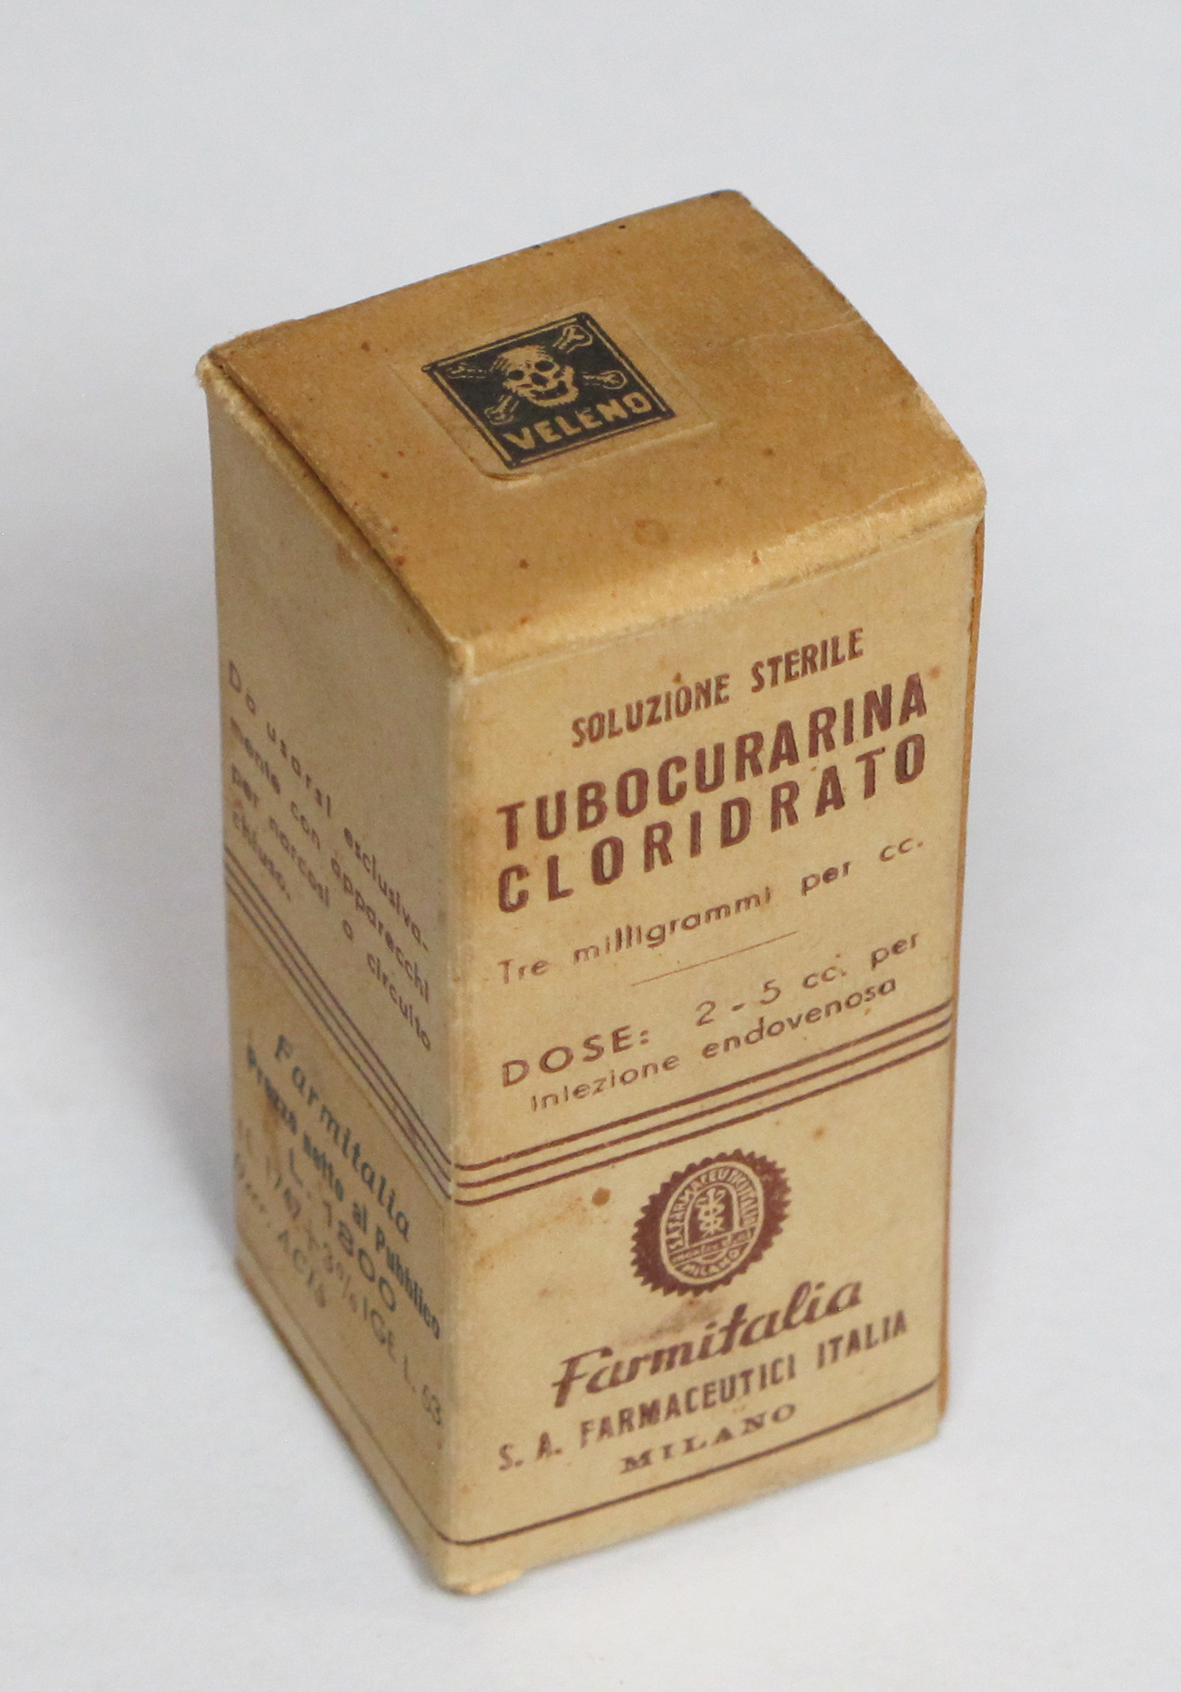 Confezione di Tubocurarina. Il farmaco moderno, formulato dal curaro, coadiuvante nell’anestesia